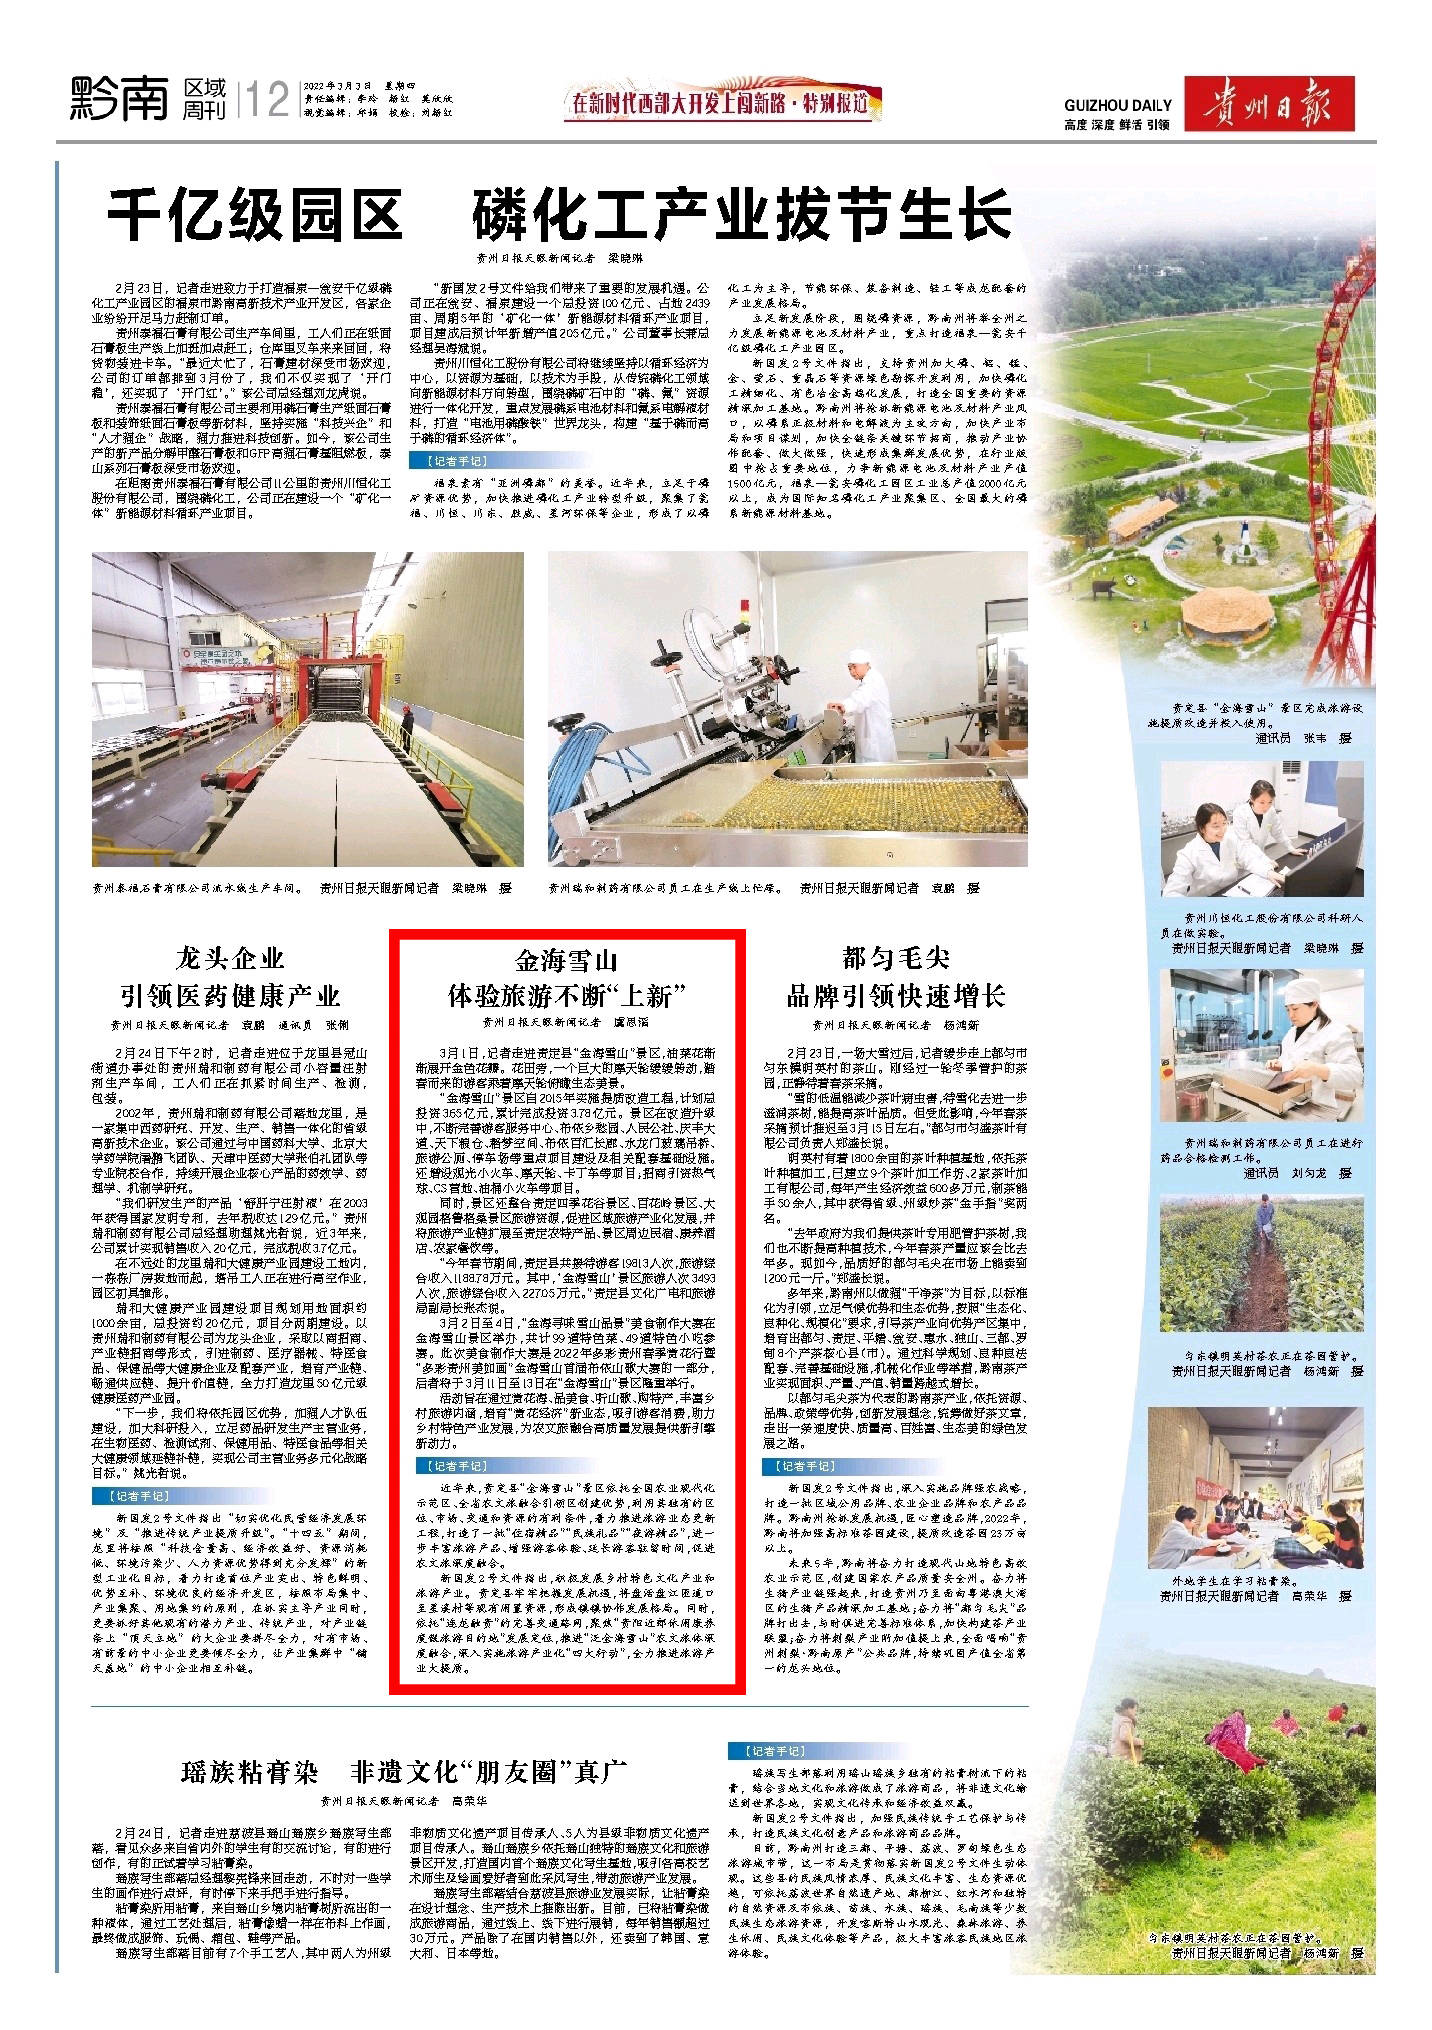 贵州日报 3月3日刊登 金海雪山体验旅游不断 上新 贵定县 景区 发展